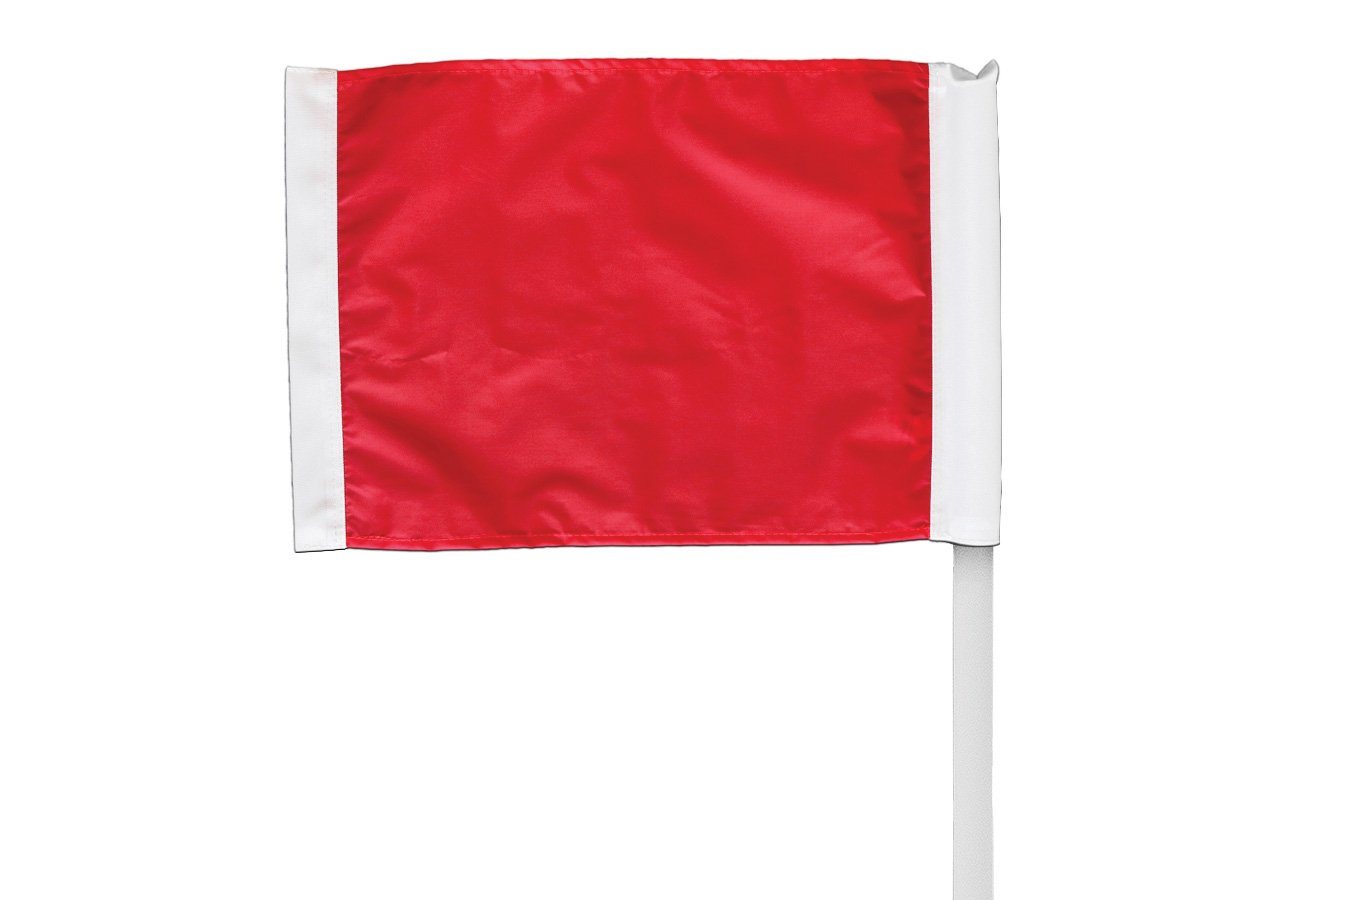 Kwikgoal Premier Corner Flags (set of 4) | 6B1404 Field equipment Kwikgoal 